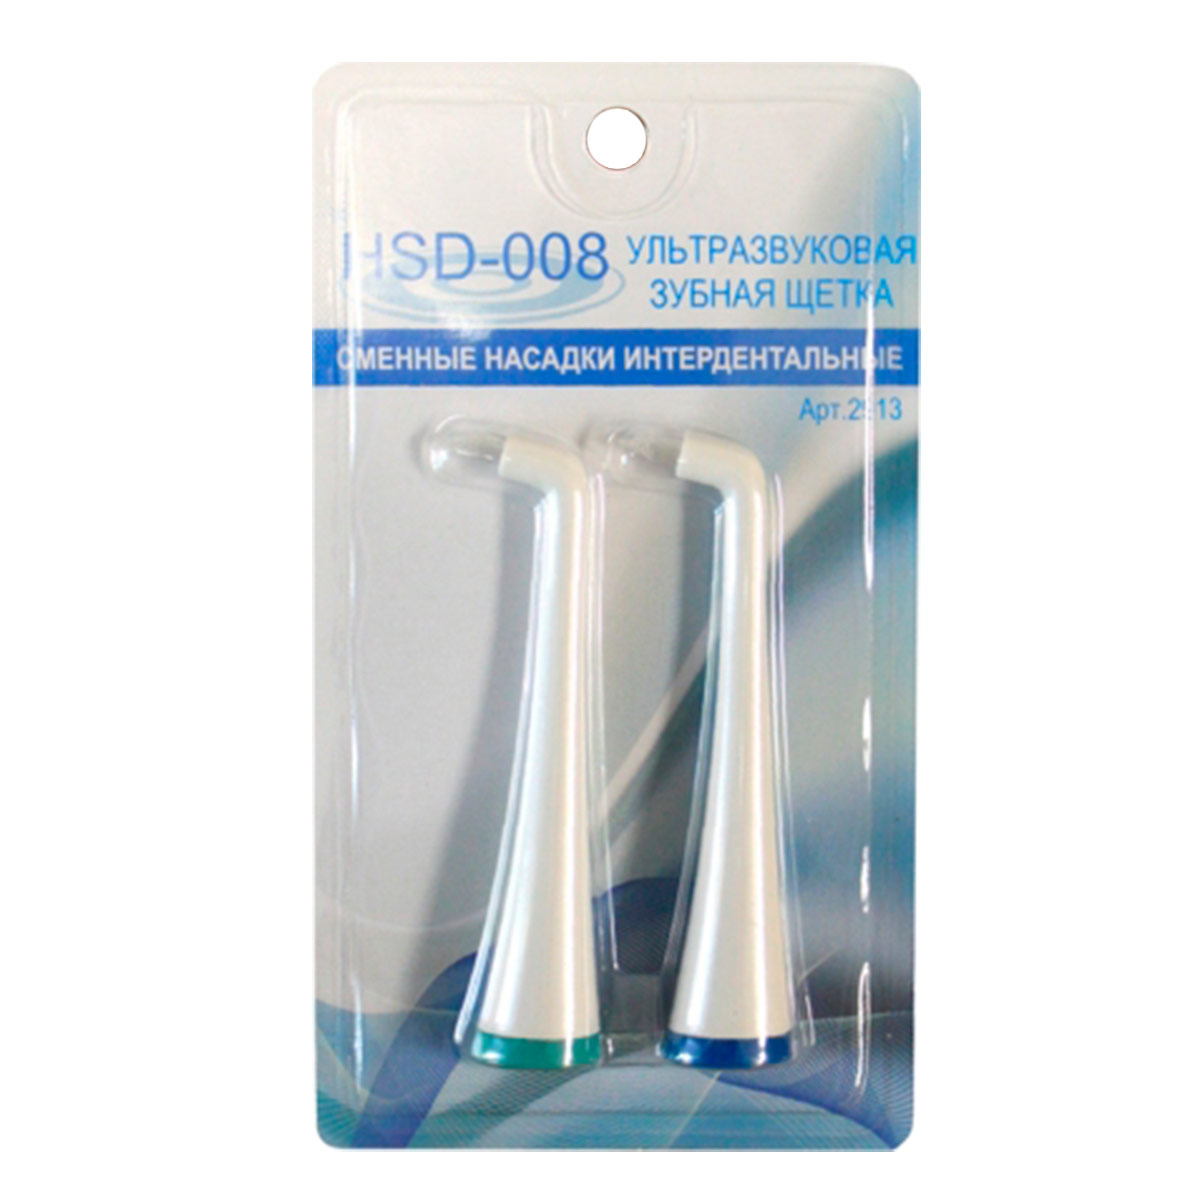 Комплект насадок Donfeel HSD-008 монопучковые (2 шт.) насадка для электрической зубной щетки donfeel hsd 010 011 012 2936 интердентальная белая 2 шт